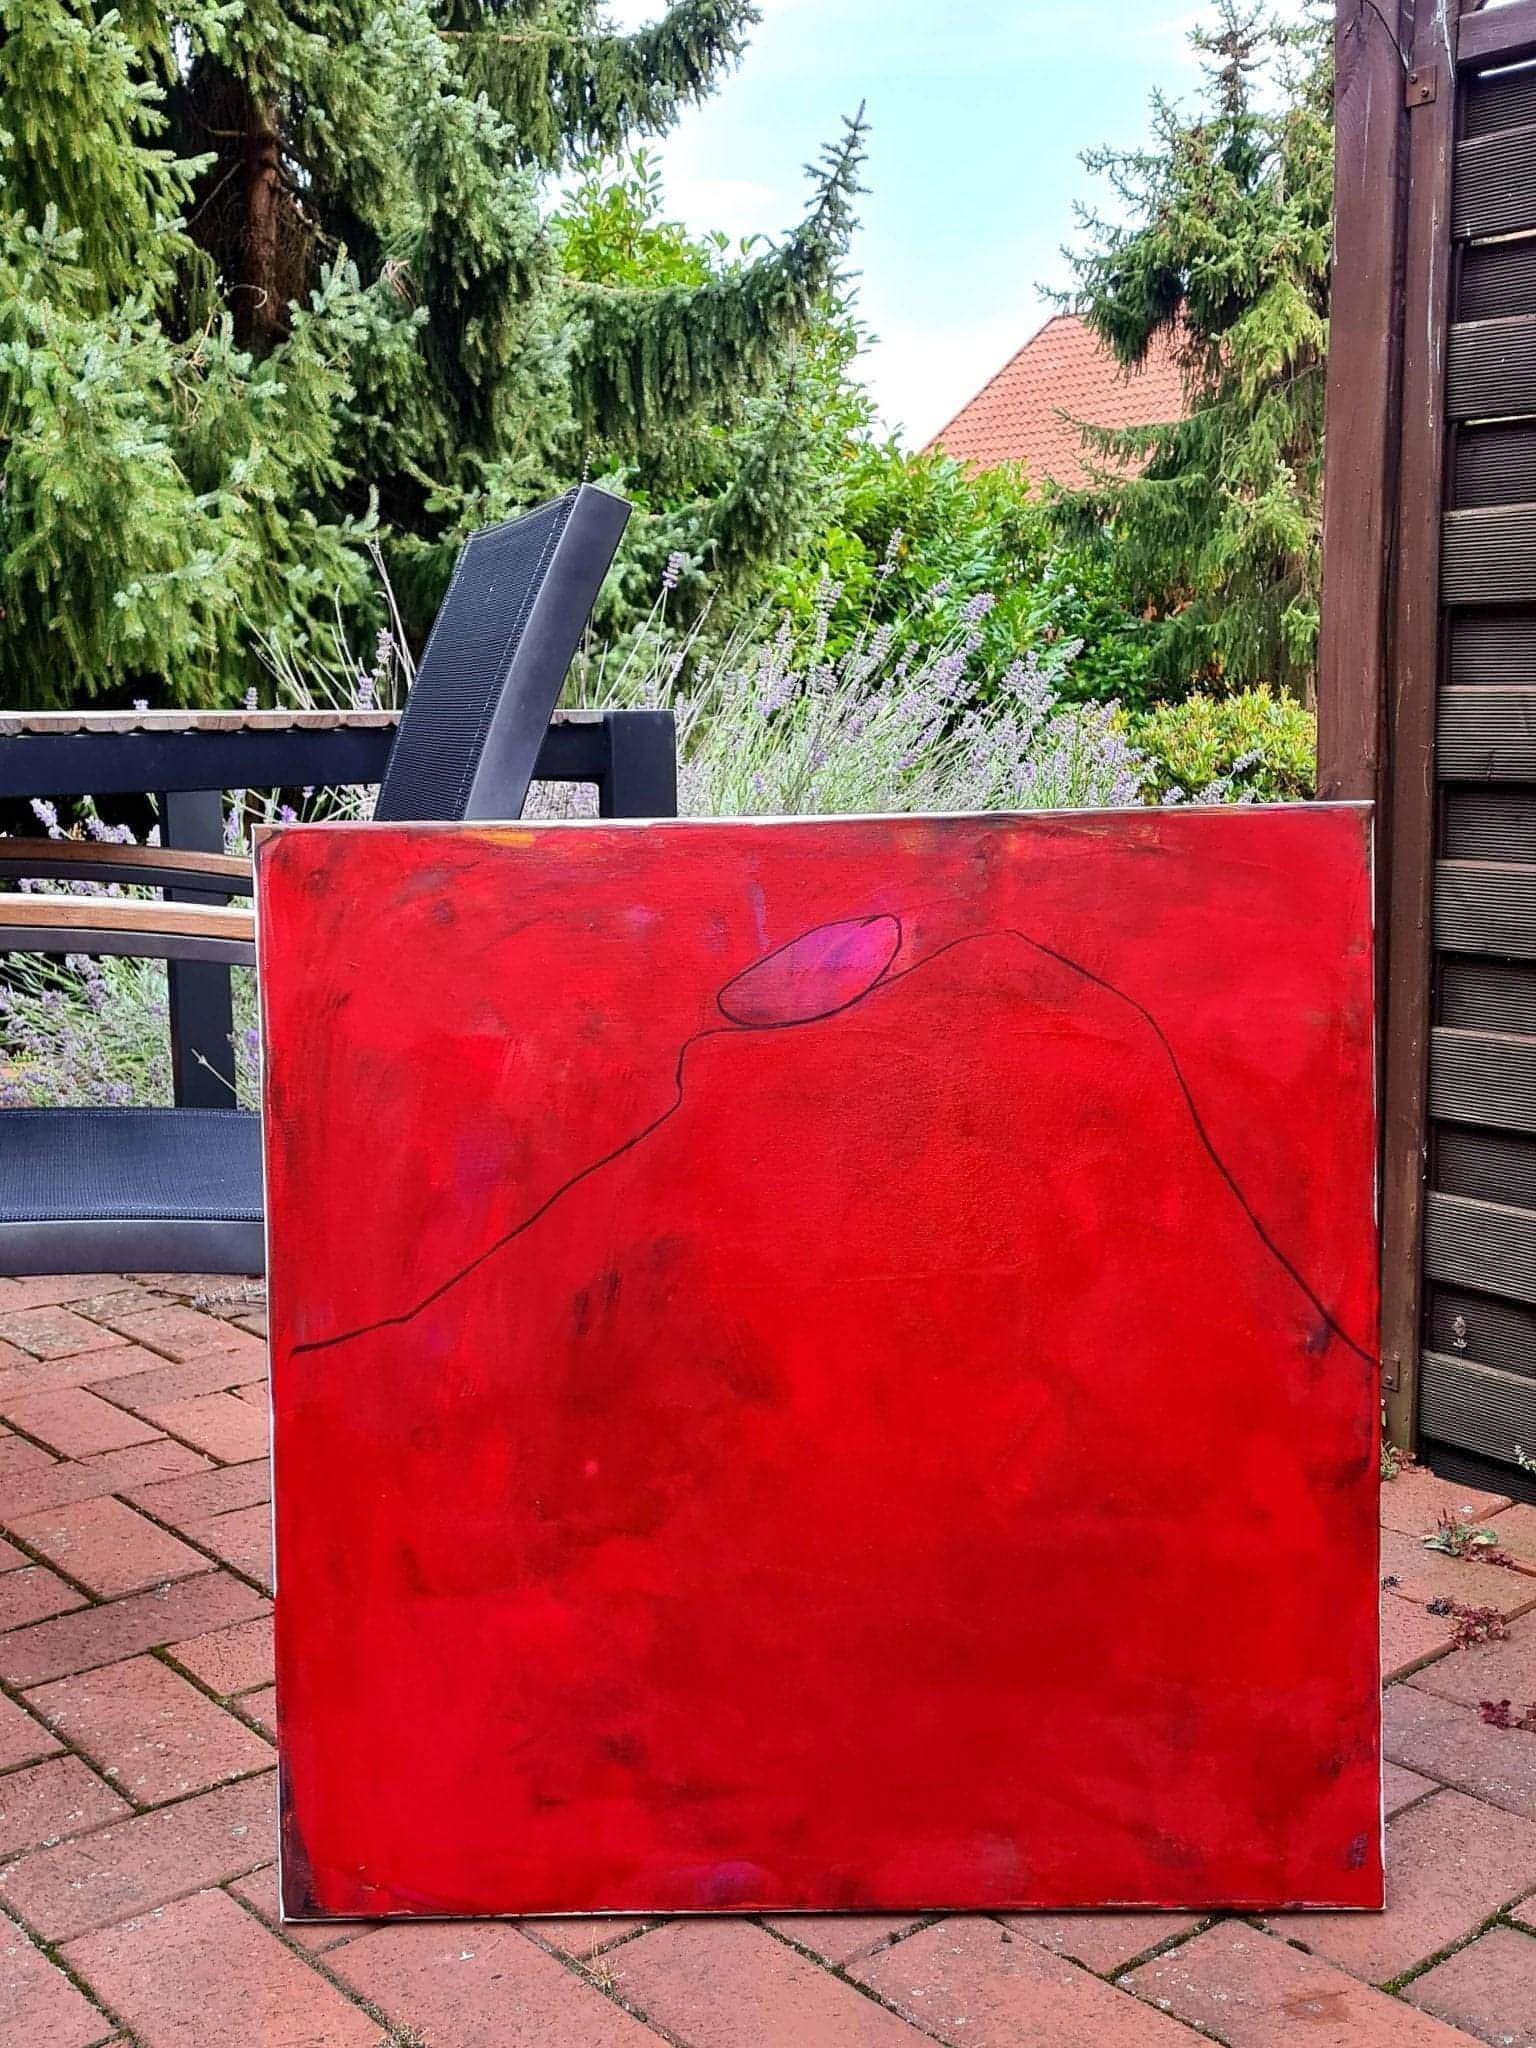 Abstraktes rotes Gemälde als Sinnbild für Ausgewogenheit Abstrakte Bilder & moderne Auftragsmalerei, abstrakte große bilder online kaufen, Auftrags Malere